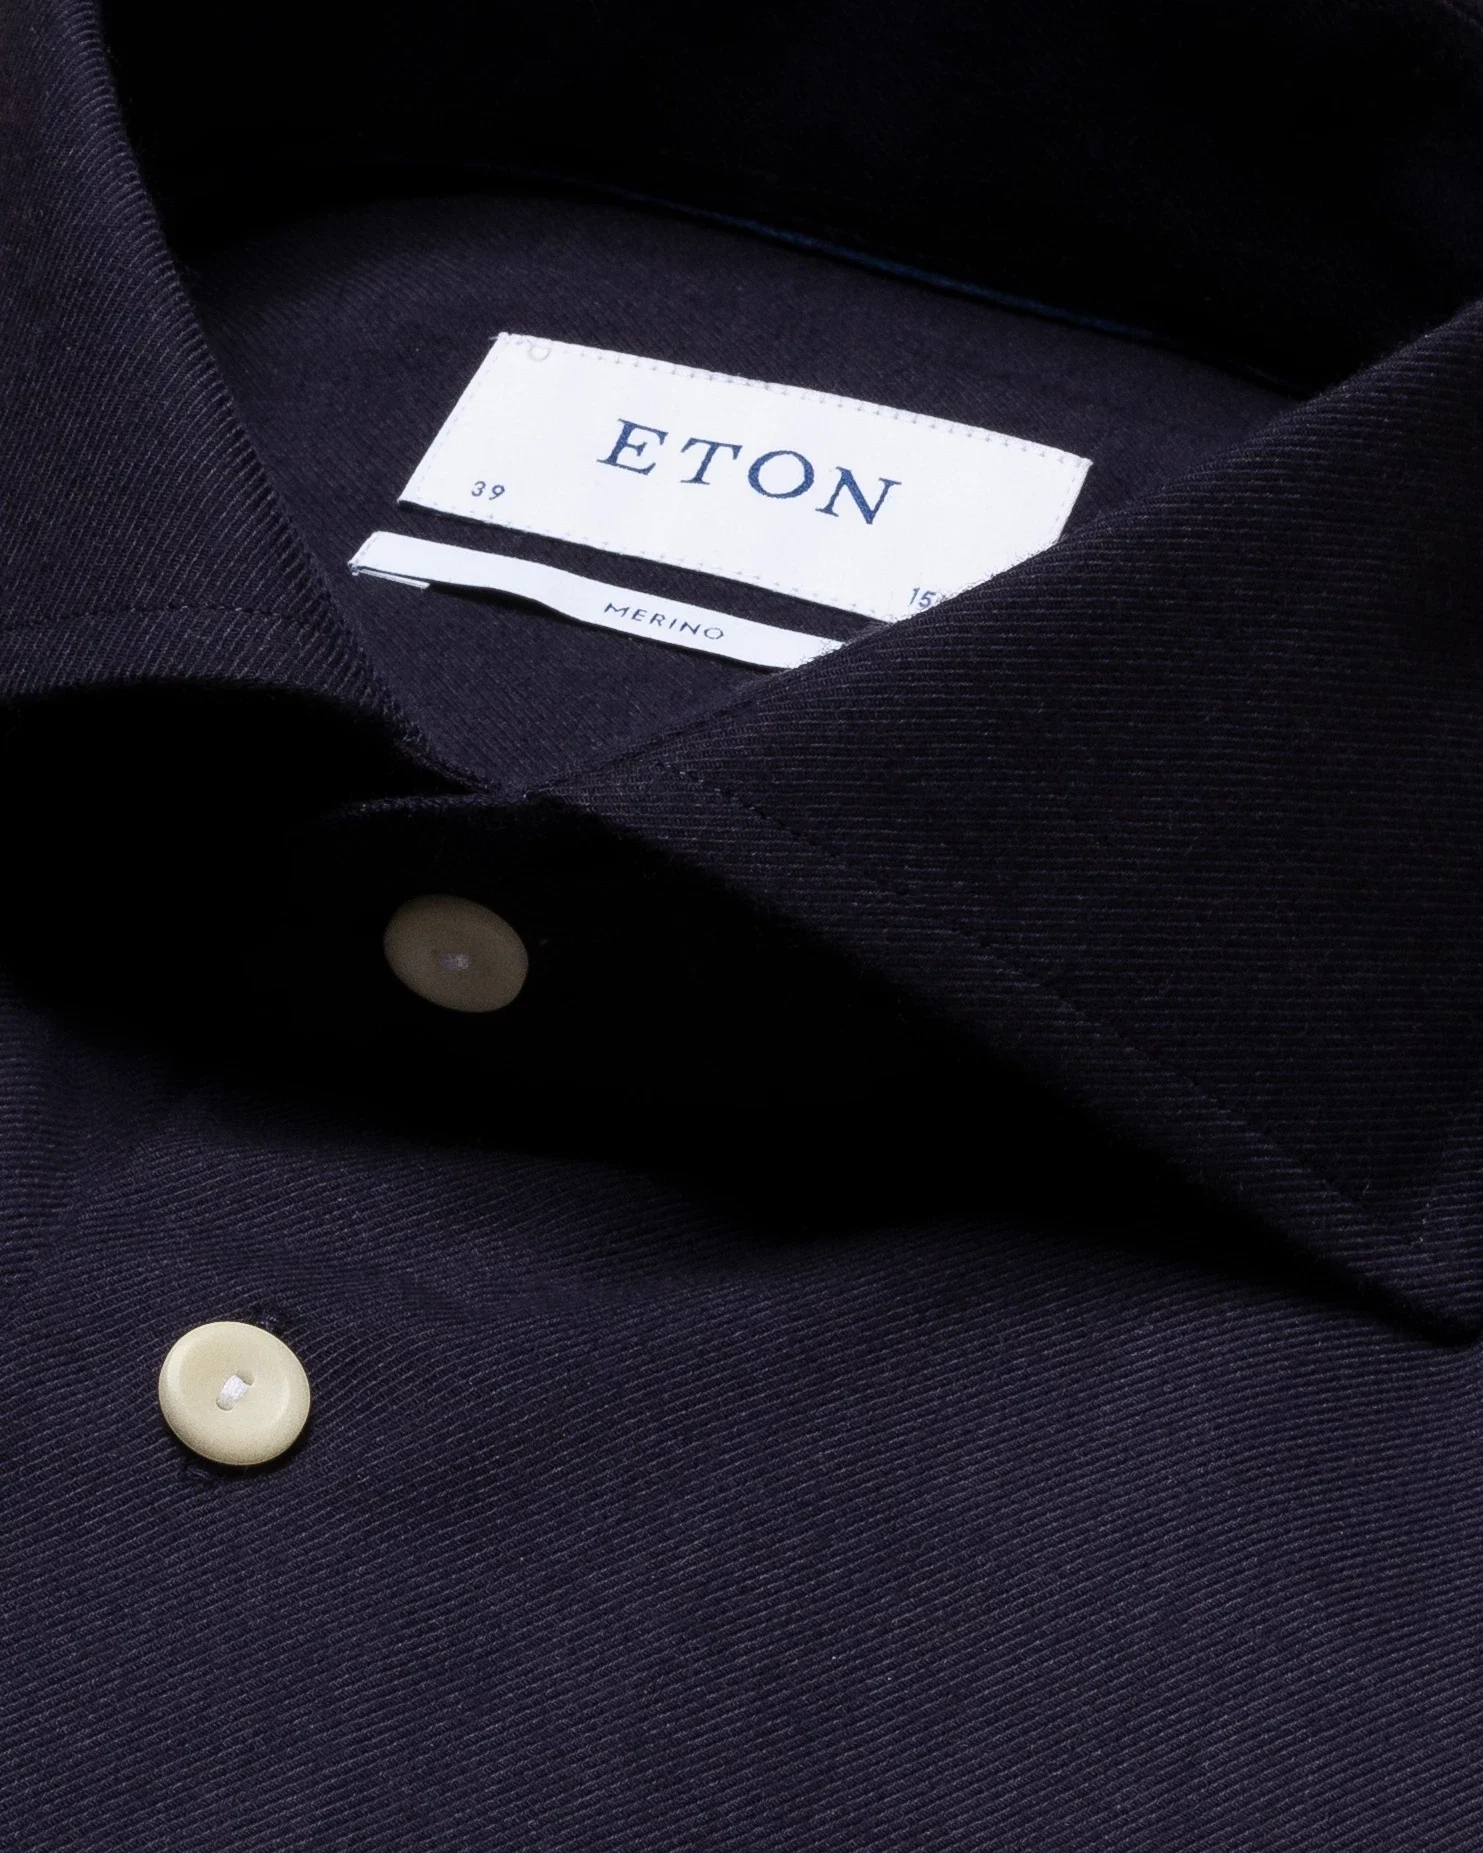 Eton - purple brushed merino wool shirt